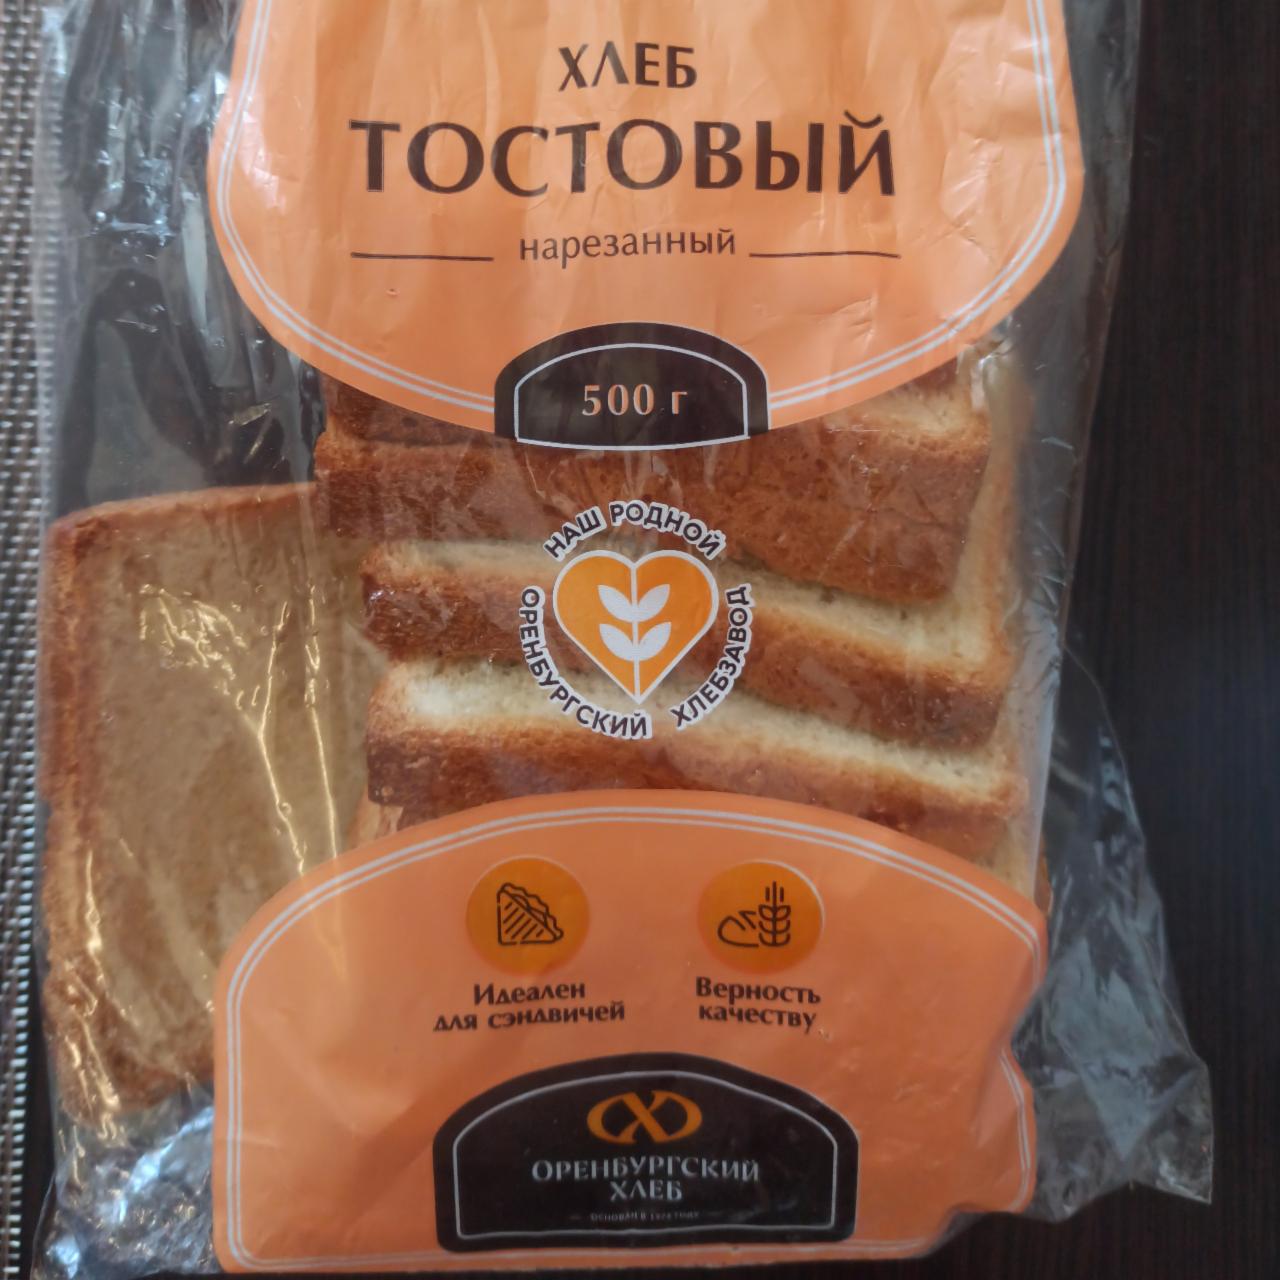 Фото - Хлеб тостовый нарезанный Оренбургский хлеб